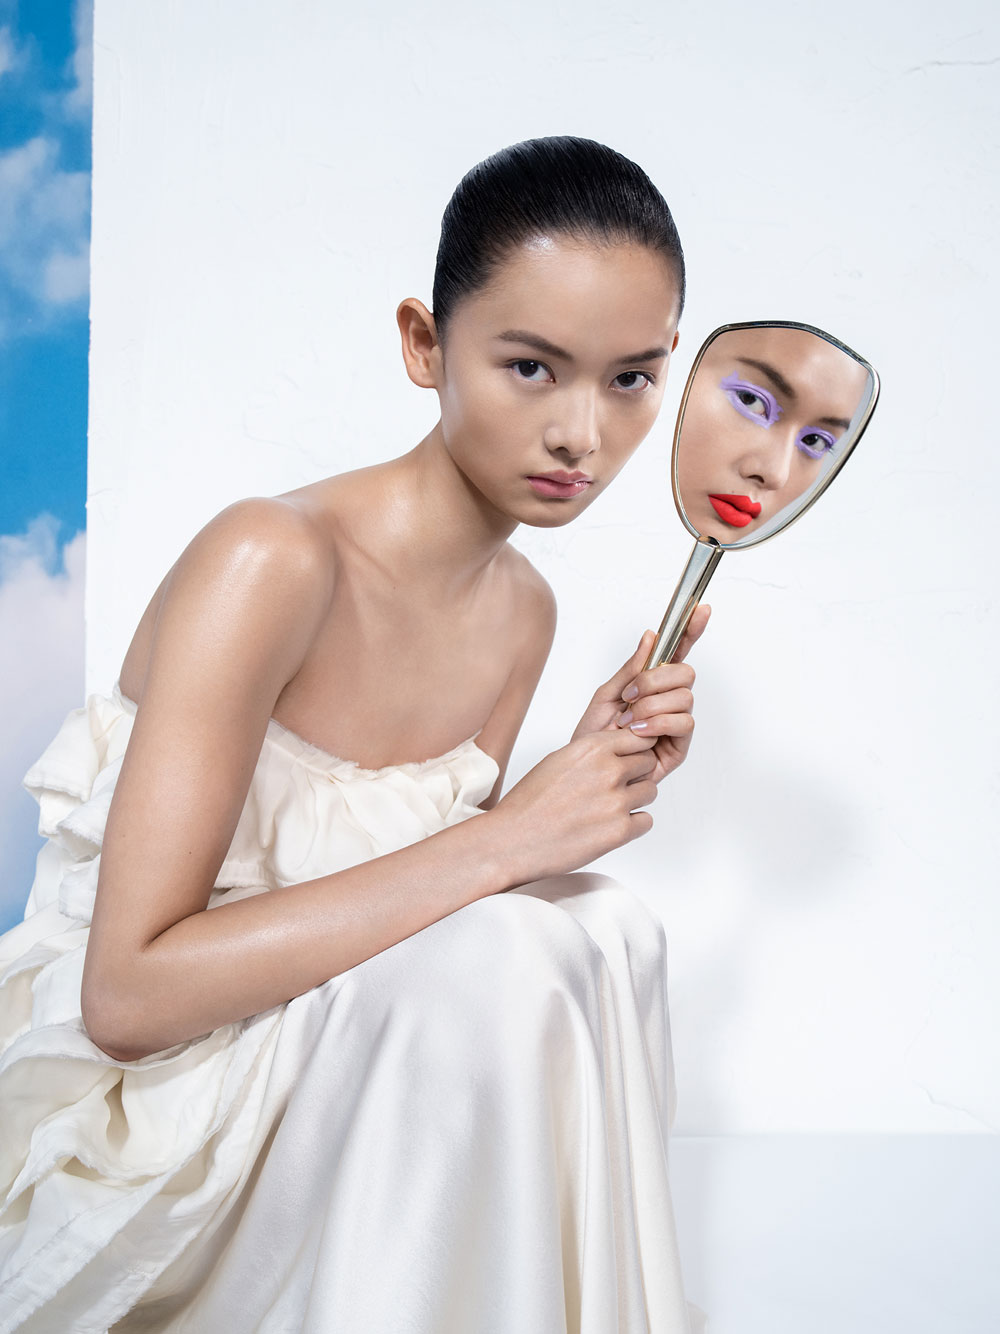 Mac Cosmetic erweitert mit Hyper Real das Sortiment um eine Hautpflege-Linie als Basis für gute Makeup-Looks. 